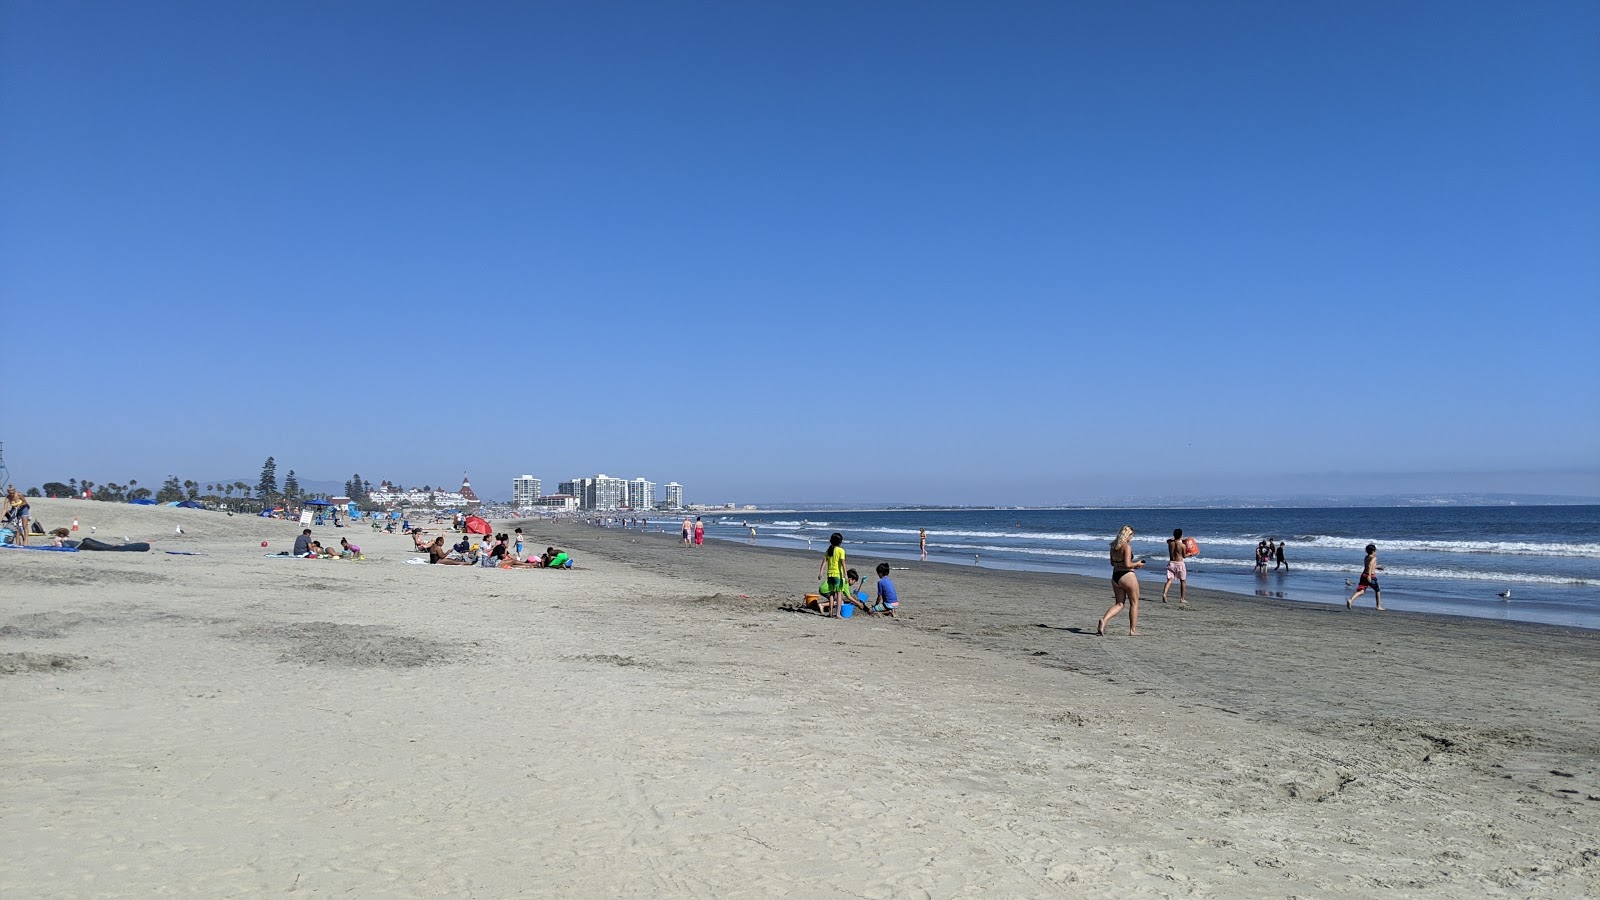 Coronado beach'in fotoğrafı çok temiz temizlik seviyesi ile